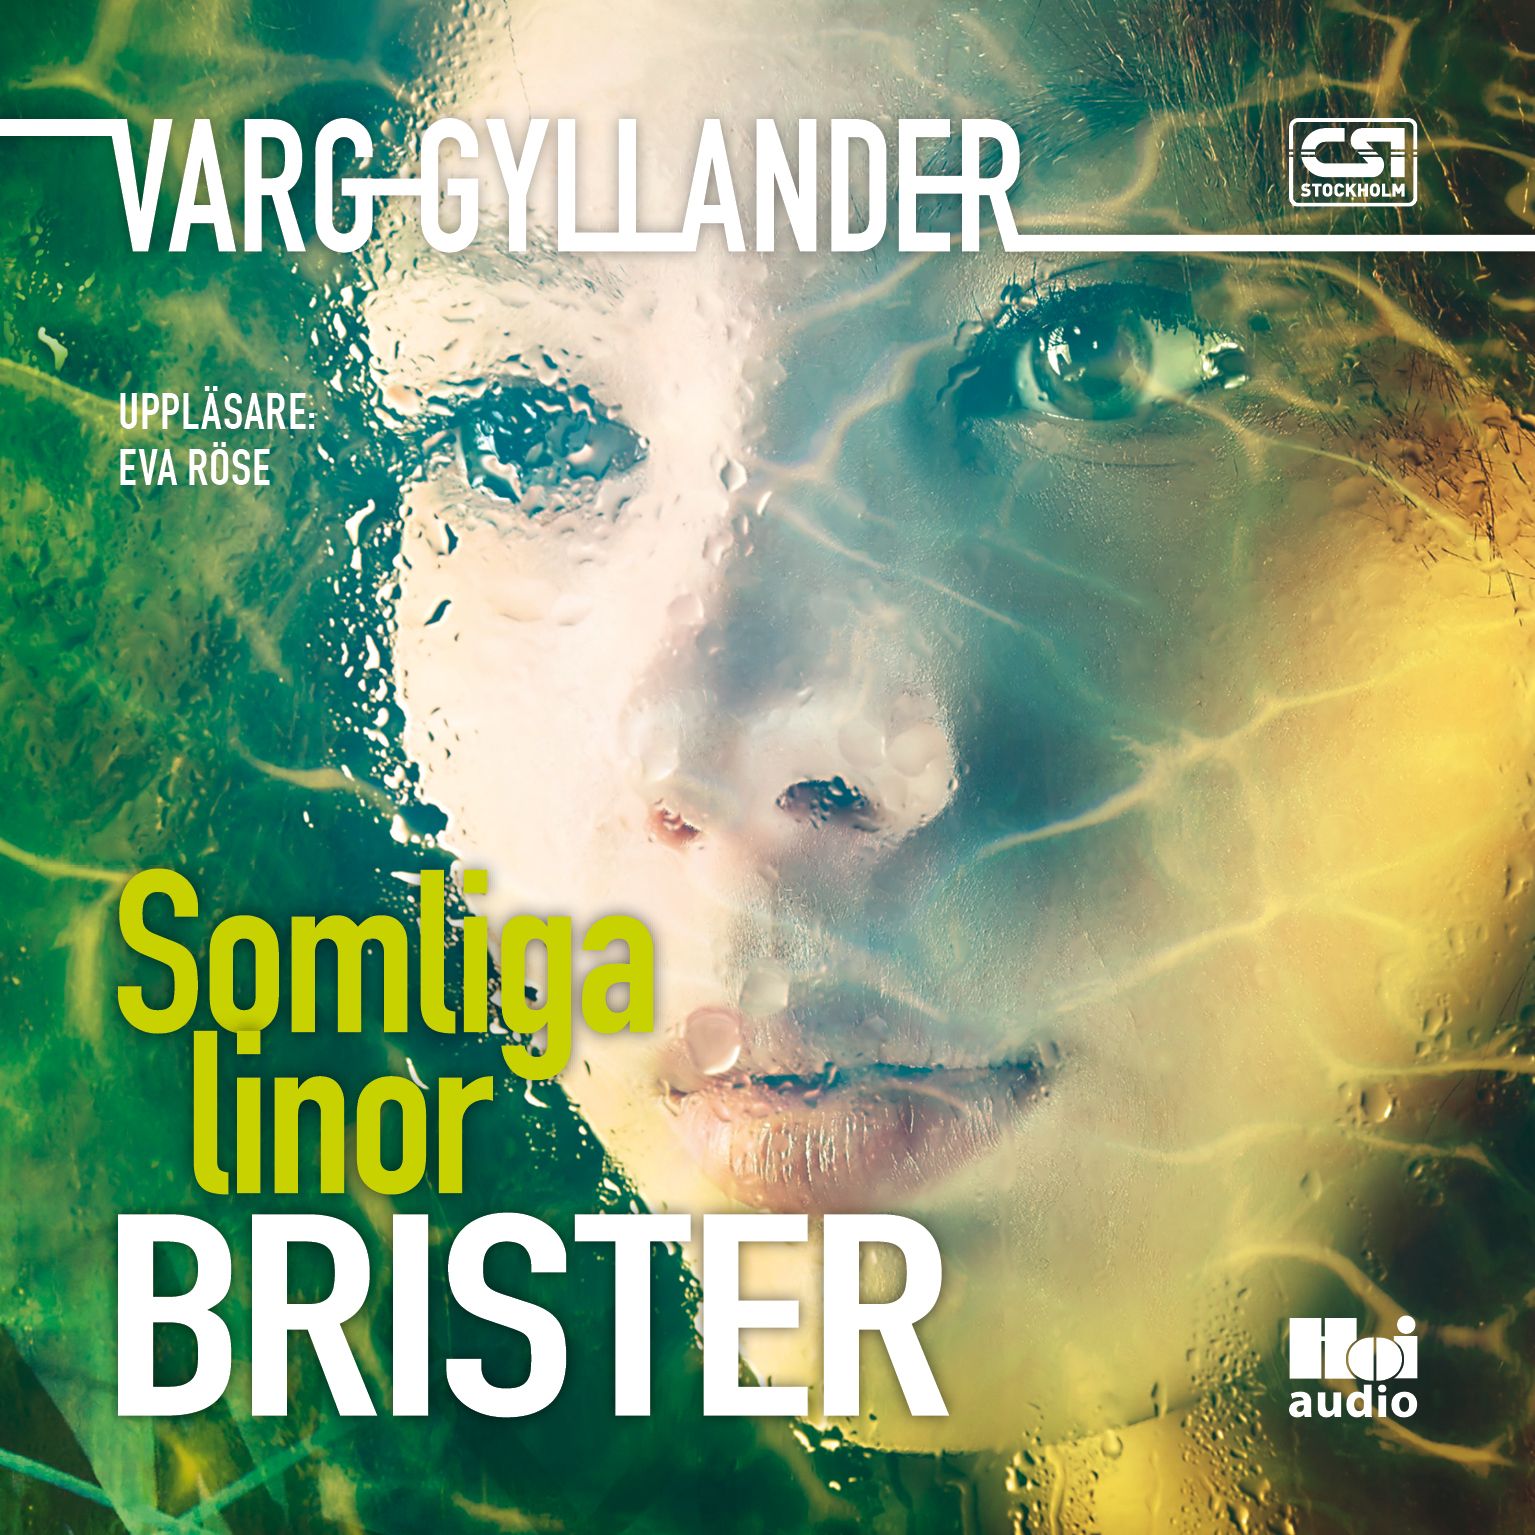 Somliga linor brister, ljudbok av Varg Gyllander